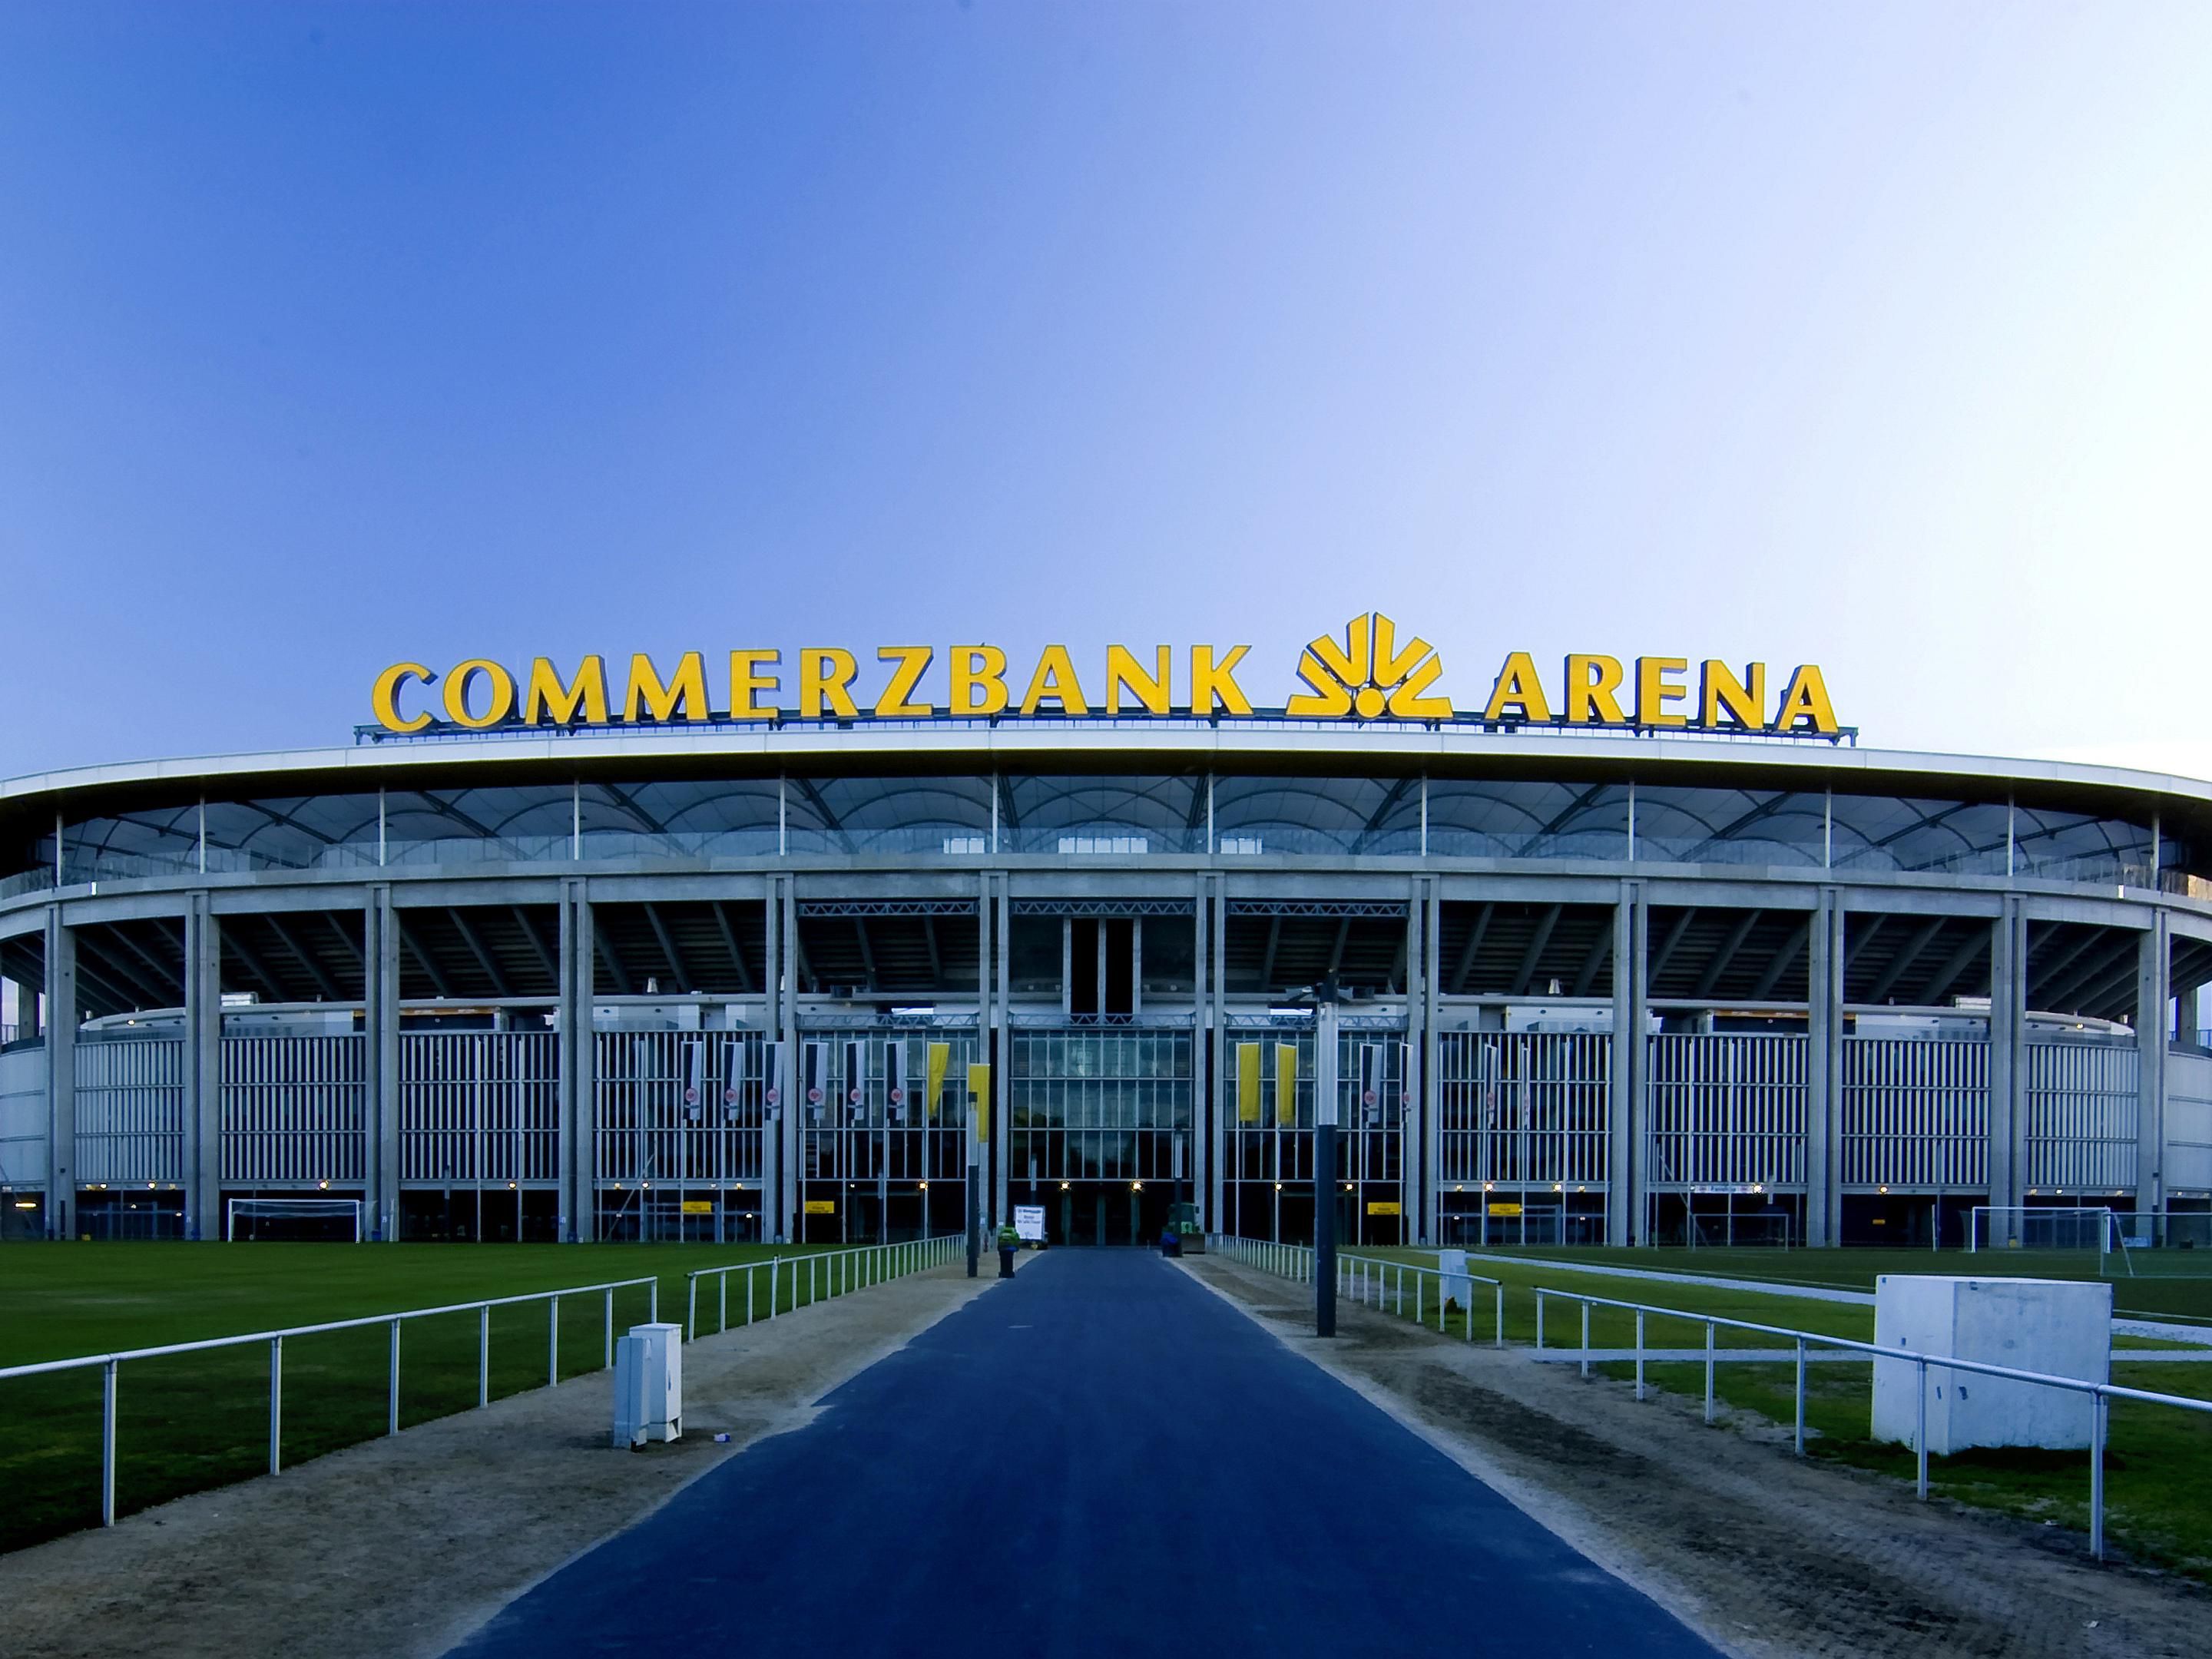 Commerzbank Arena (football stadium)